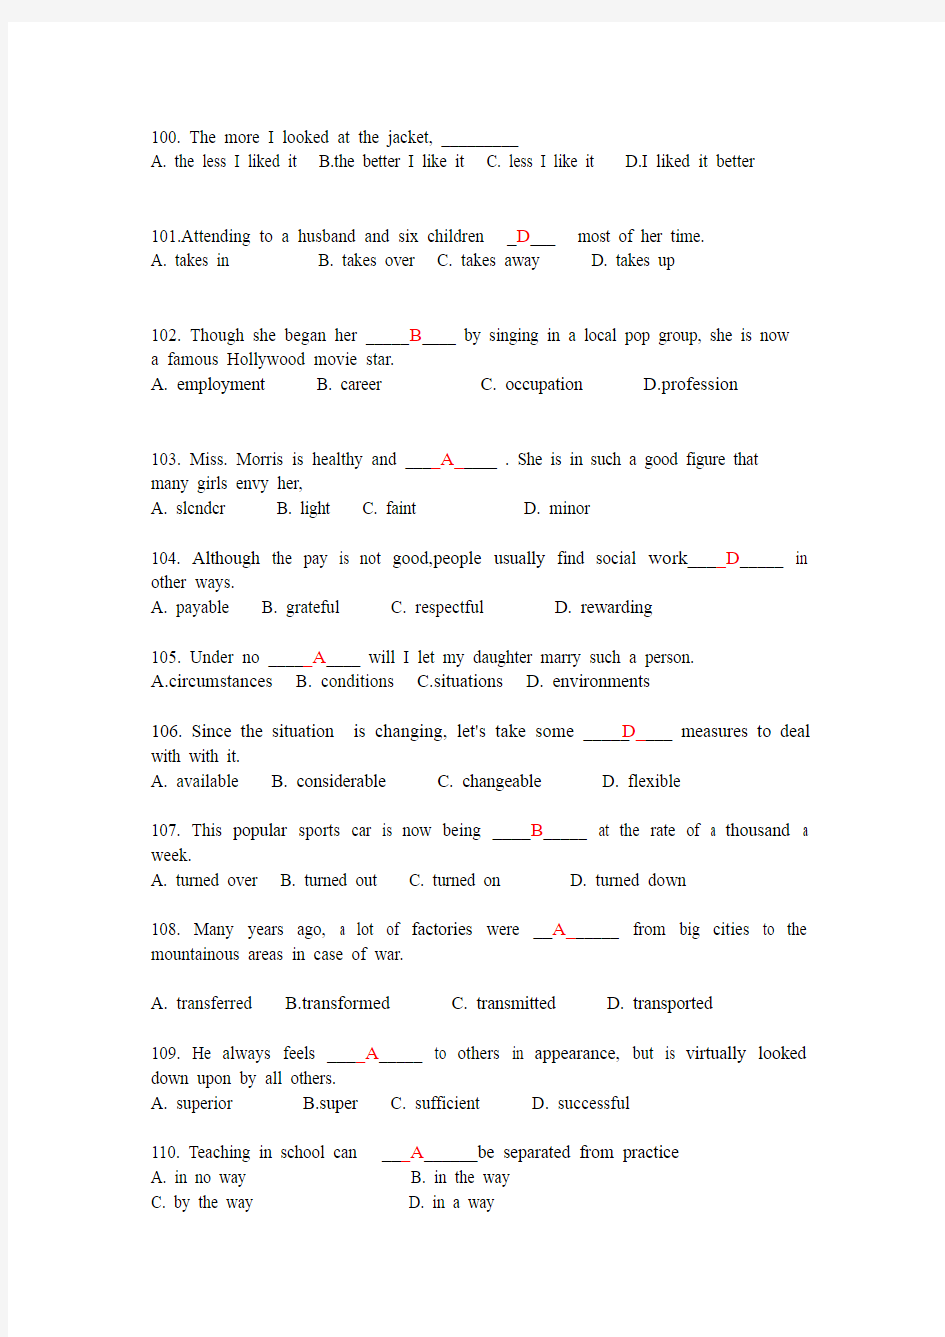 2013年广西成人教育学士学位英语考试指南-词汇和语法专题练习及答案(下)(1)